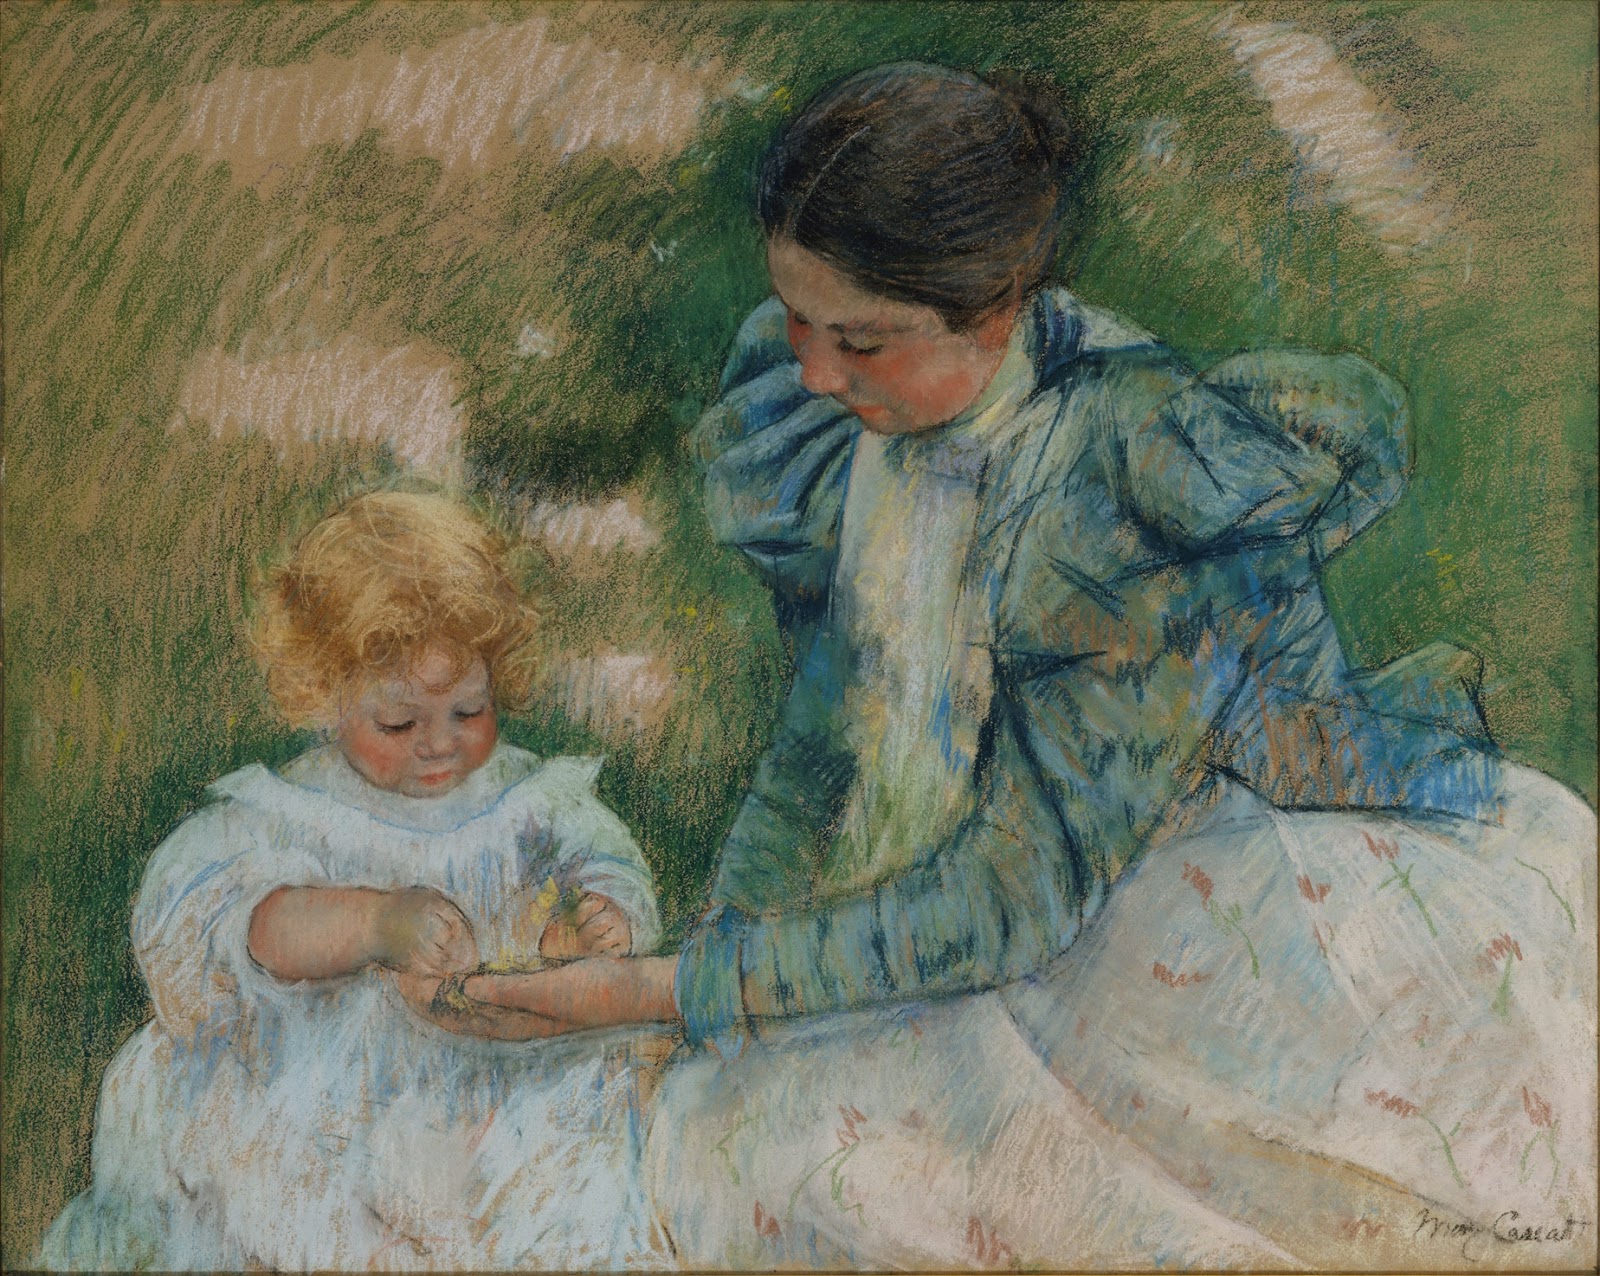 Mary+Cassatt-1844-1926 (208).jpg